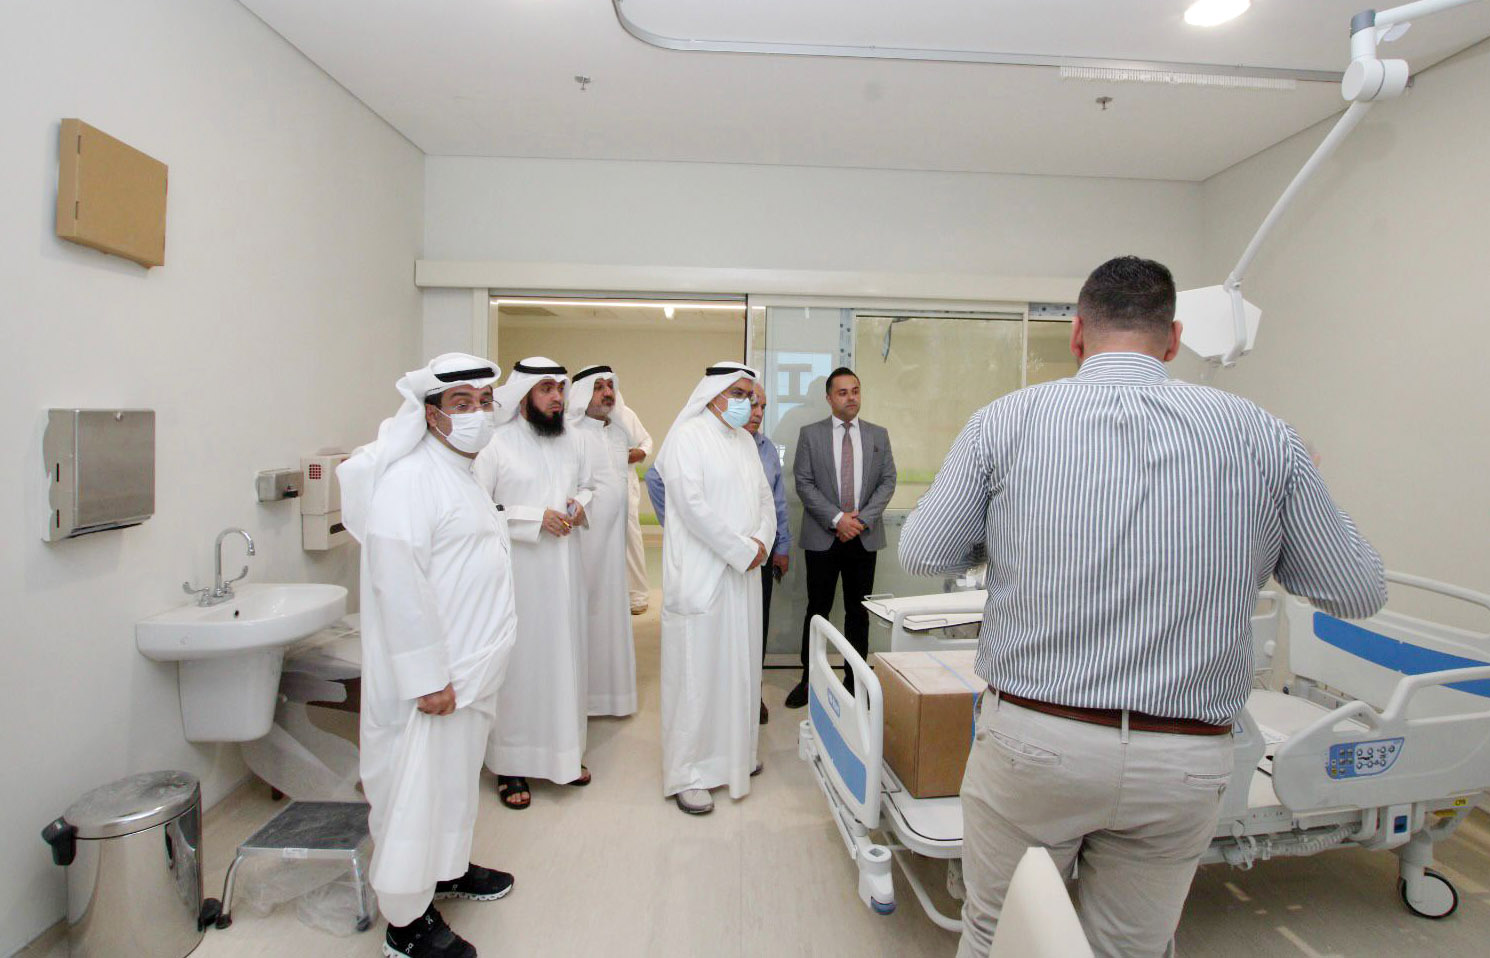 وزير الصحة يتفقد مستشفى الفروانية الجديد للوقوف على استعدادات افتتاحه وتشغيله